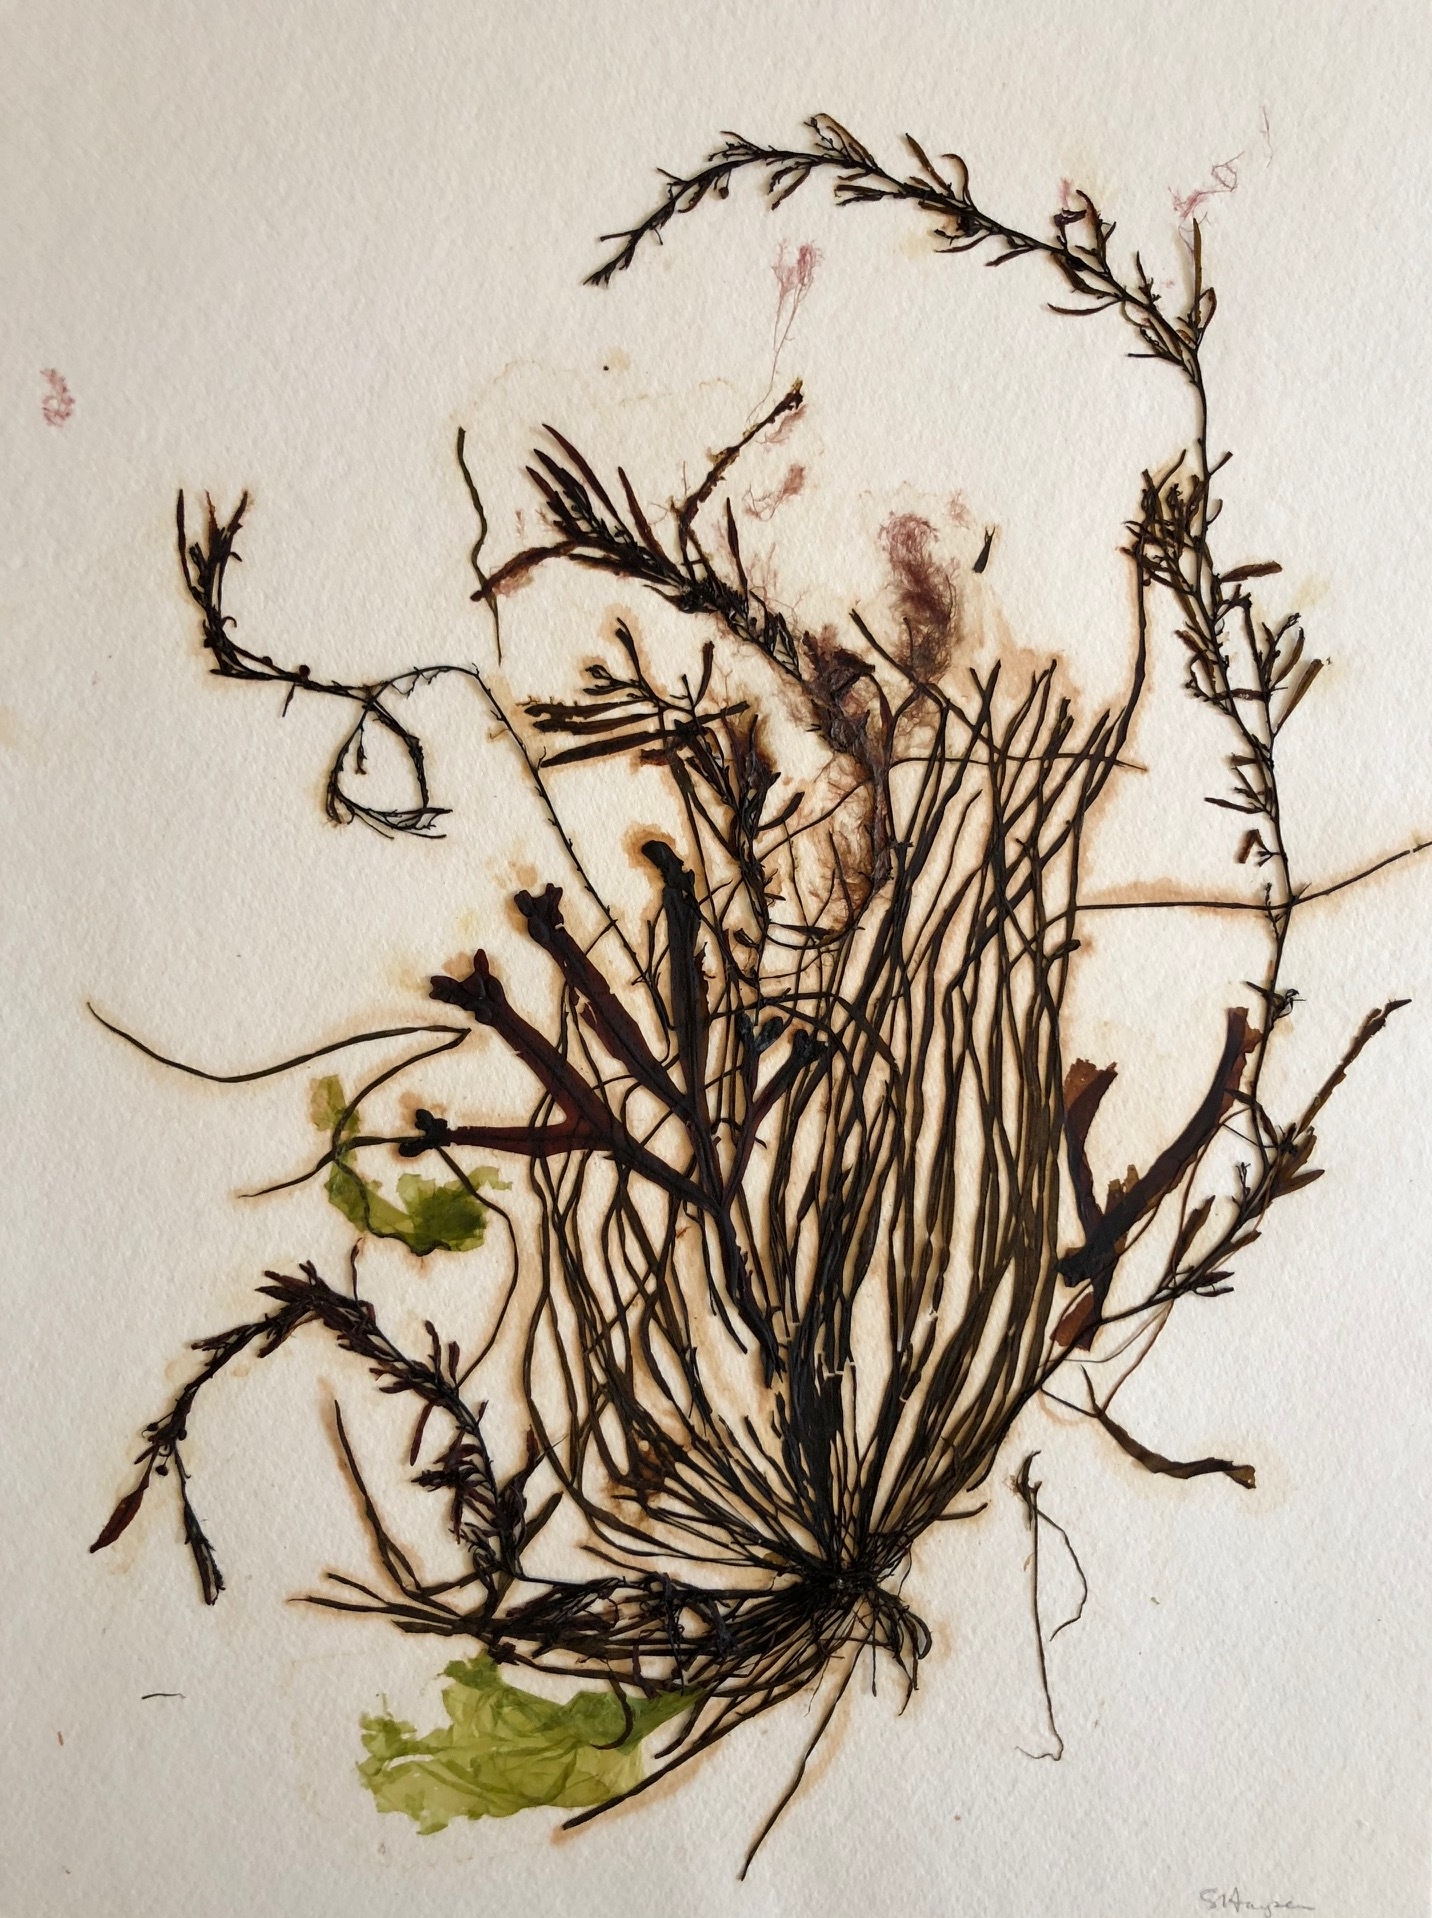 Seaweed 13/13, 11x14